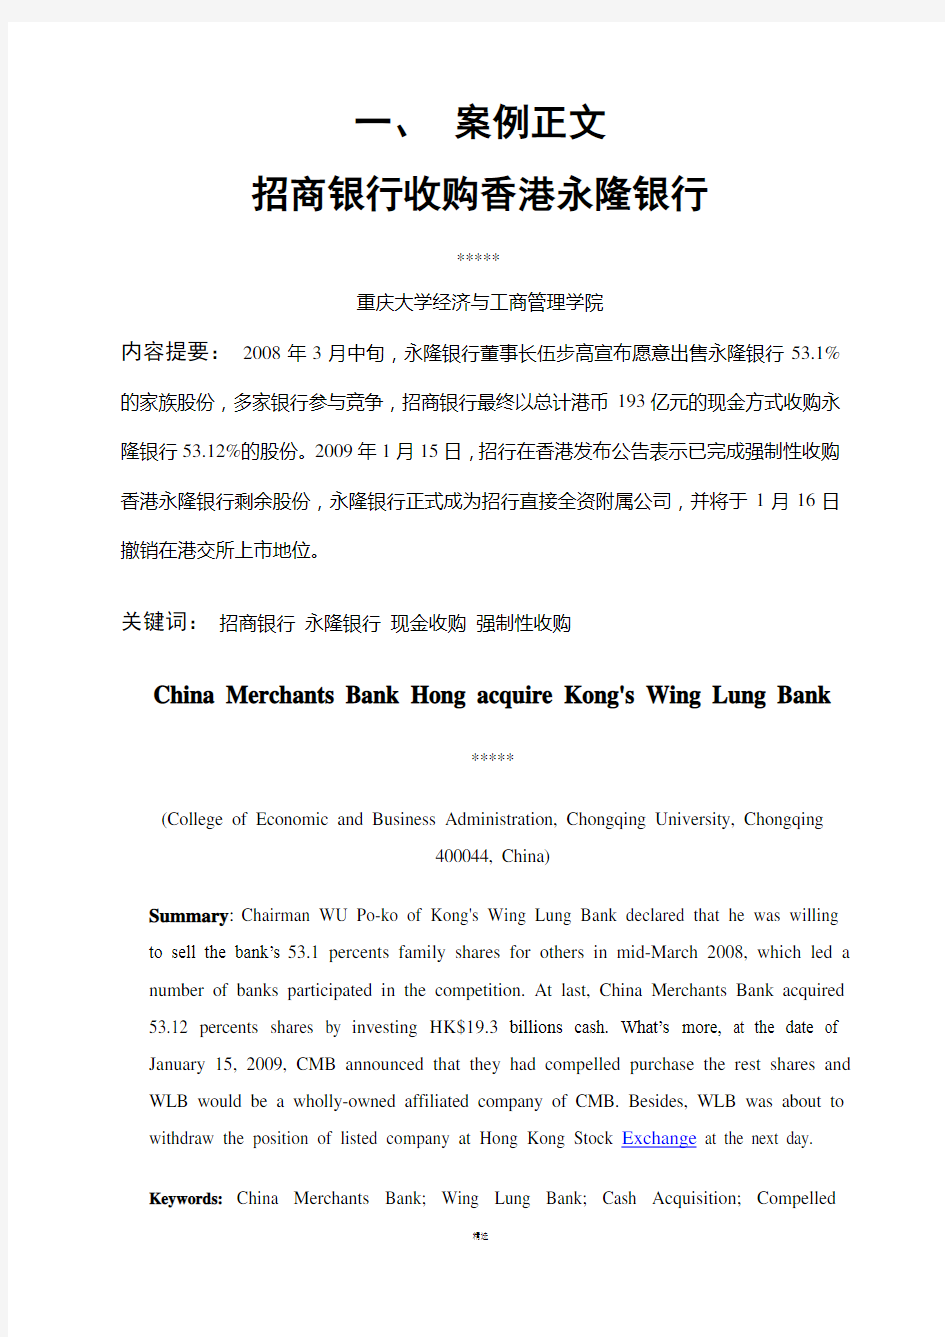 案例-招商银行收购香港永隆银行